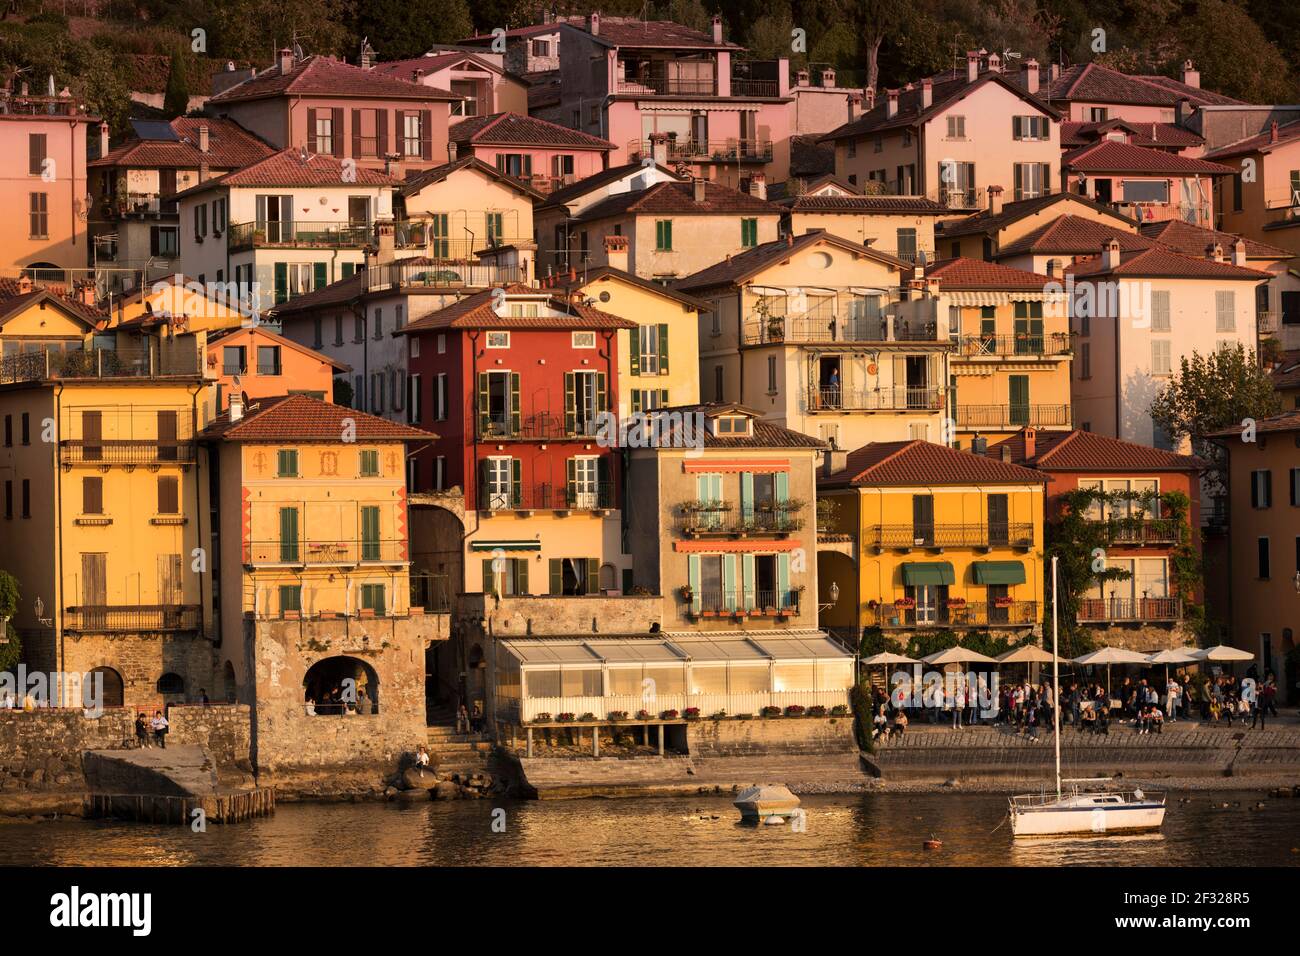 Italien, Varenna, Comer See, die Stadt Varenna vom See aus gesehen Stockfoto